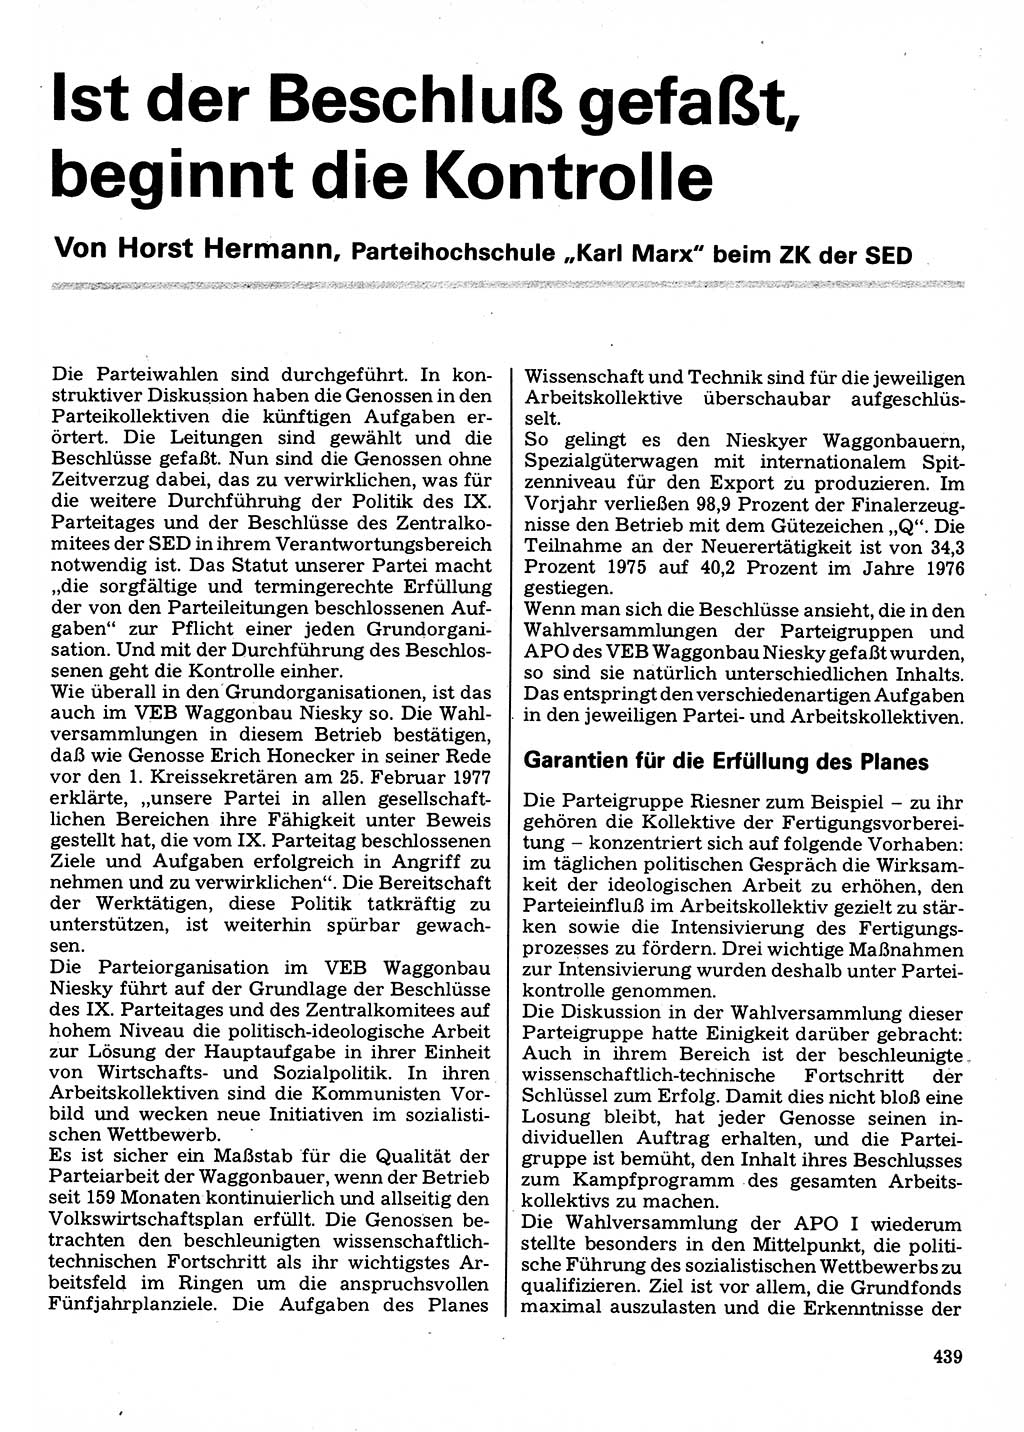 Neuer Weg (NW), Organ des Zentralkomitees (ZK) der SED (Sozialistische Einheitspartei Deutschlands) für Fragen des Parteilebens, 32. Jahrgang [Deutsche Demokratische Republik (DDR)] 1977, Seite 439 (NW ZK SED DDR 1977, S. 439)